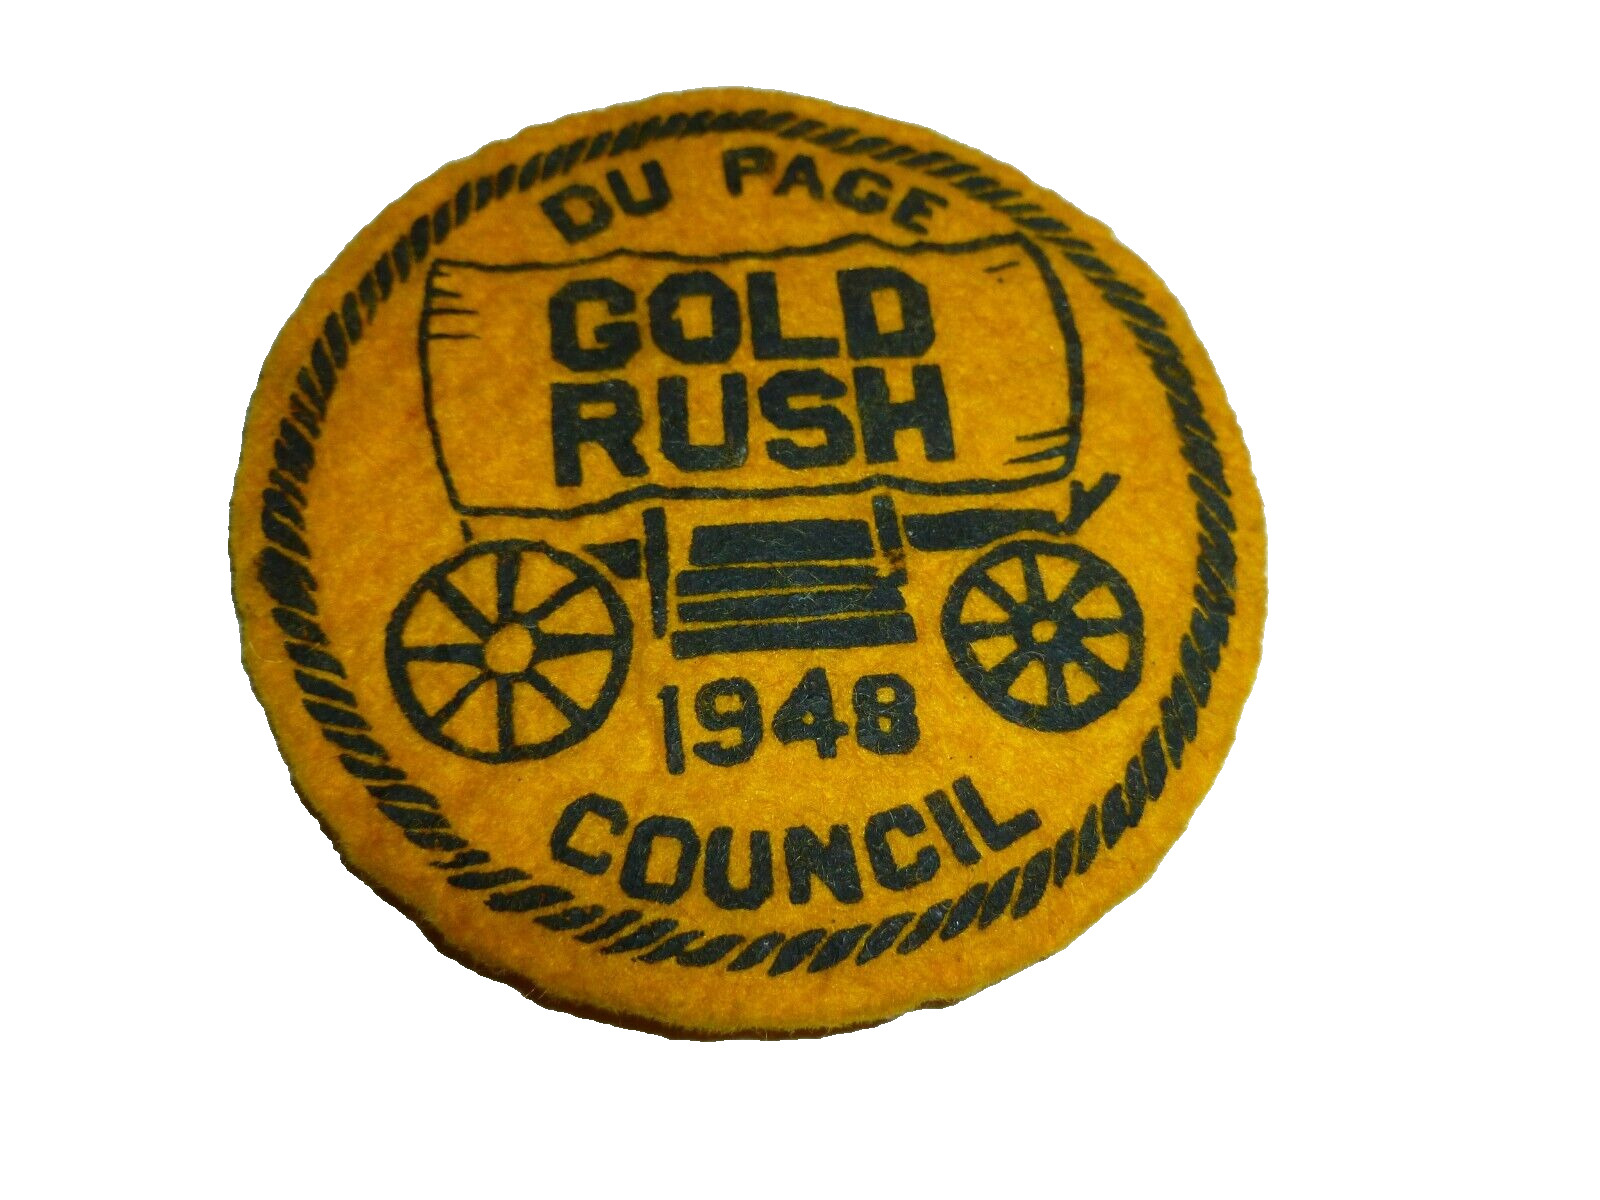 Vintage Du Page Council Patch 1948 Gold Rush BSA Boy Scouts FELT